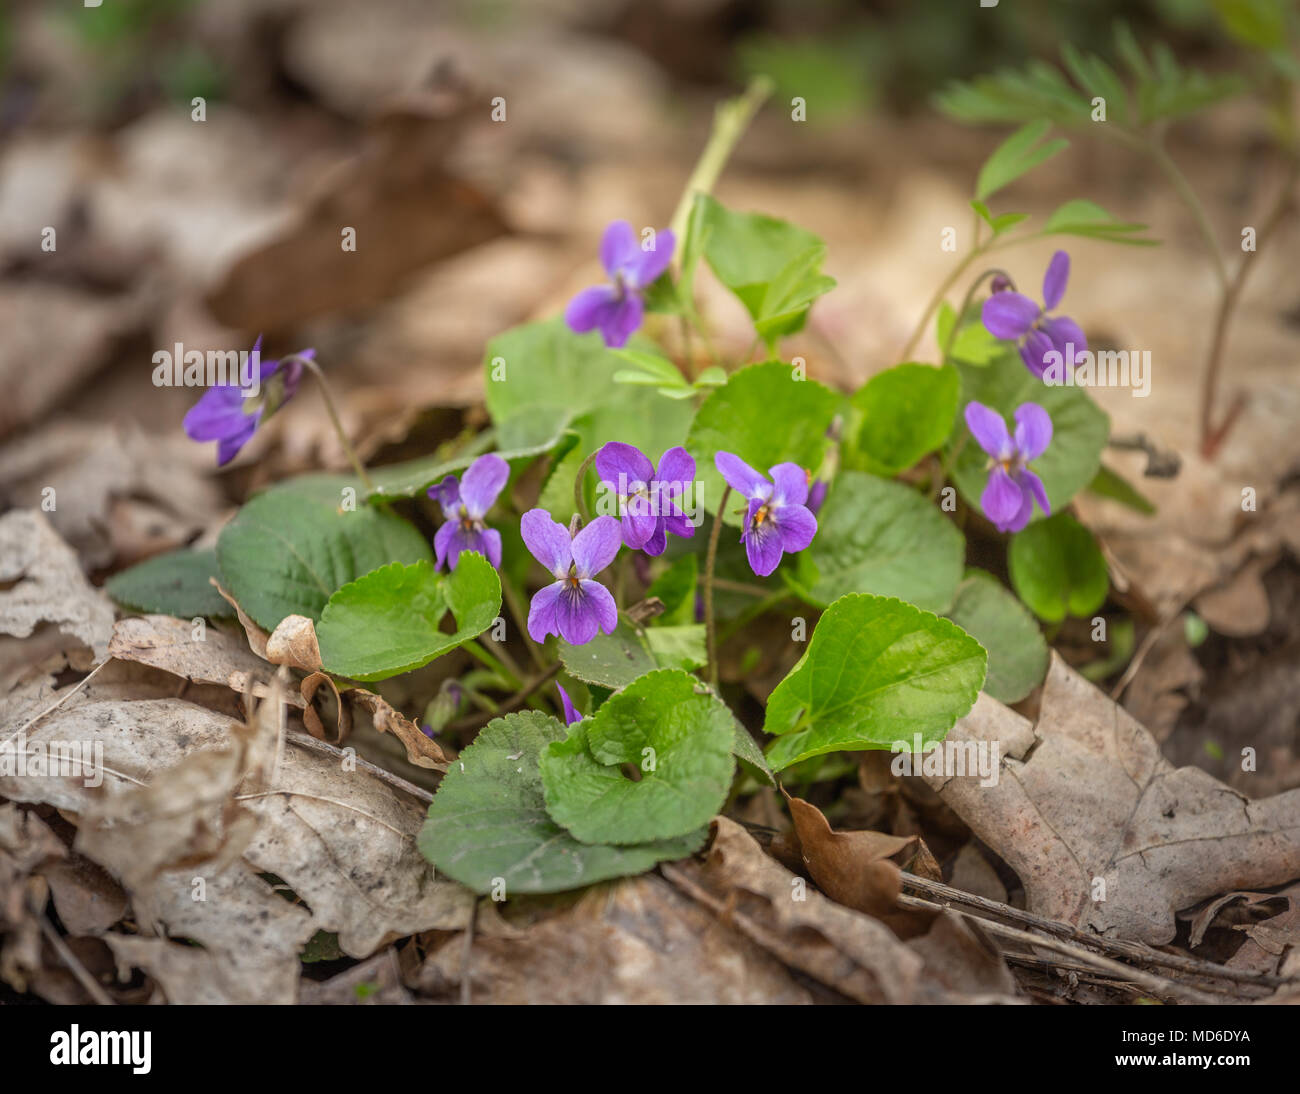 Fleurs de Printemps dans la forêt, au début du printemps. Plante vivace  herbacée - Viola odorata violette Bois, violette odorante, violette, viole  le jardin anglais Photo Stock - Alamy